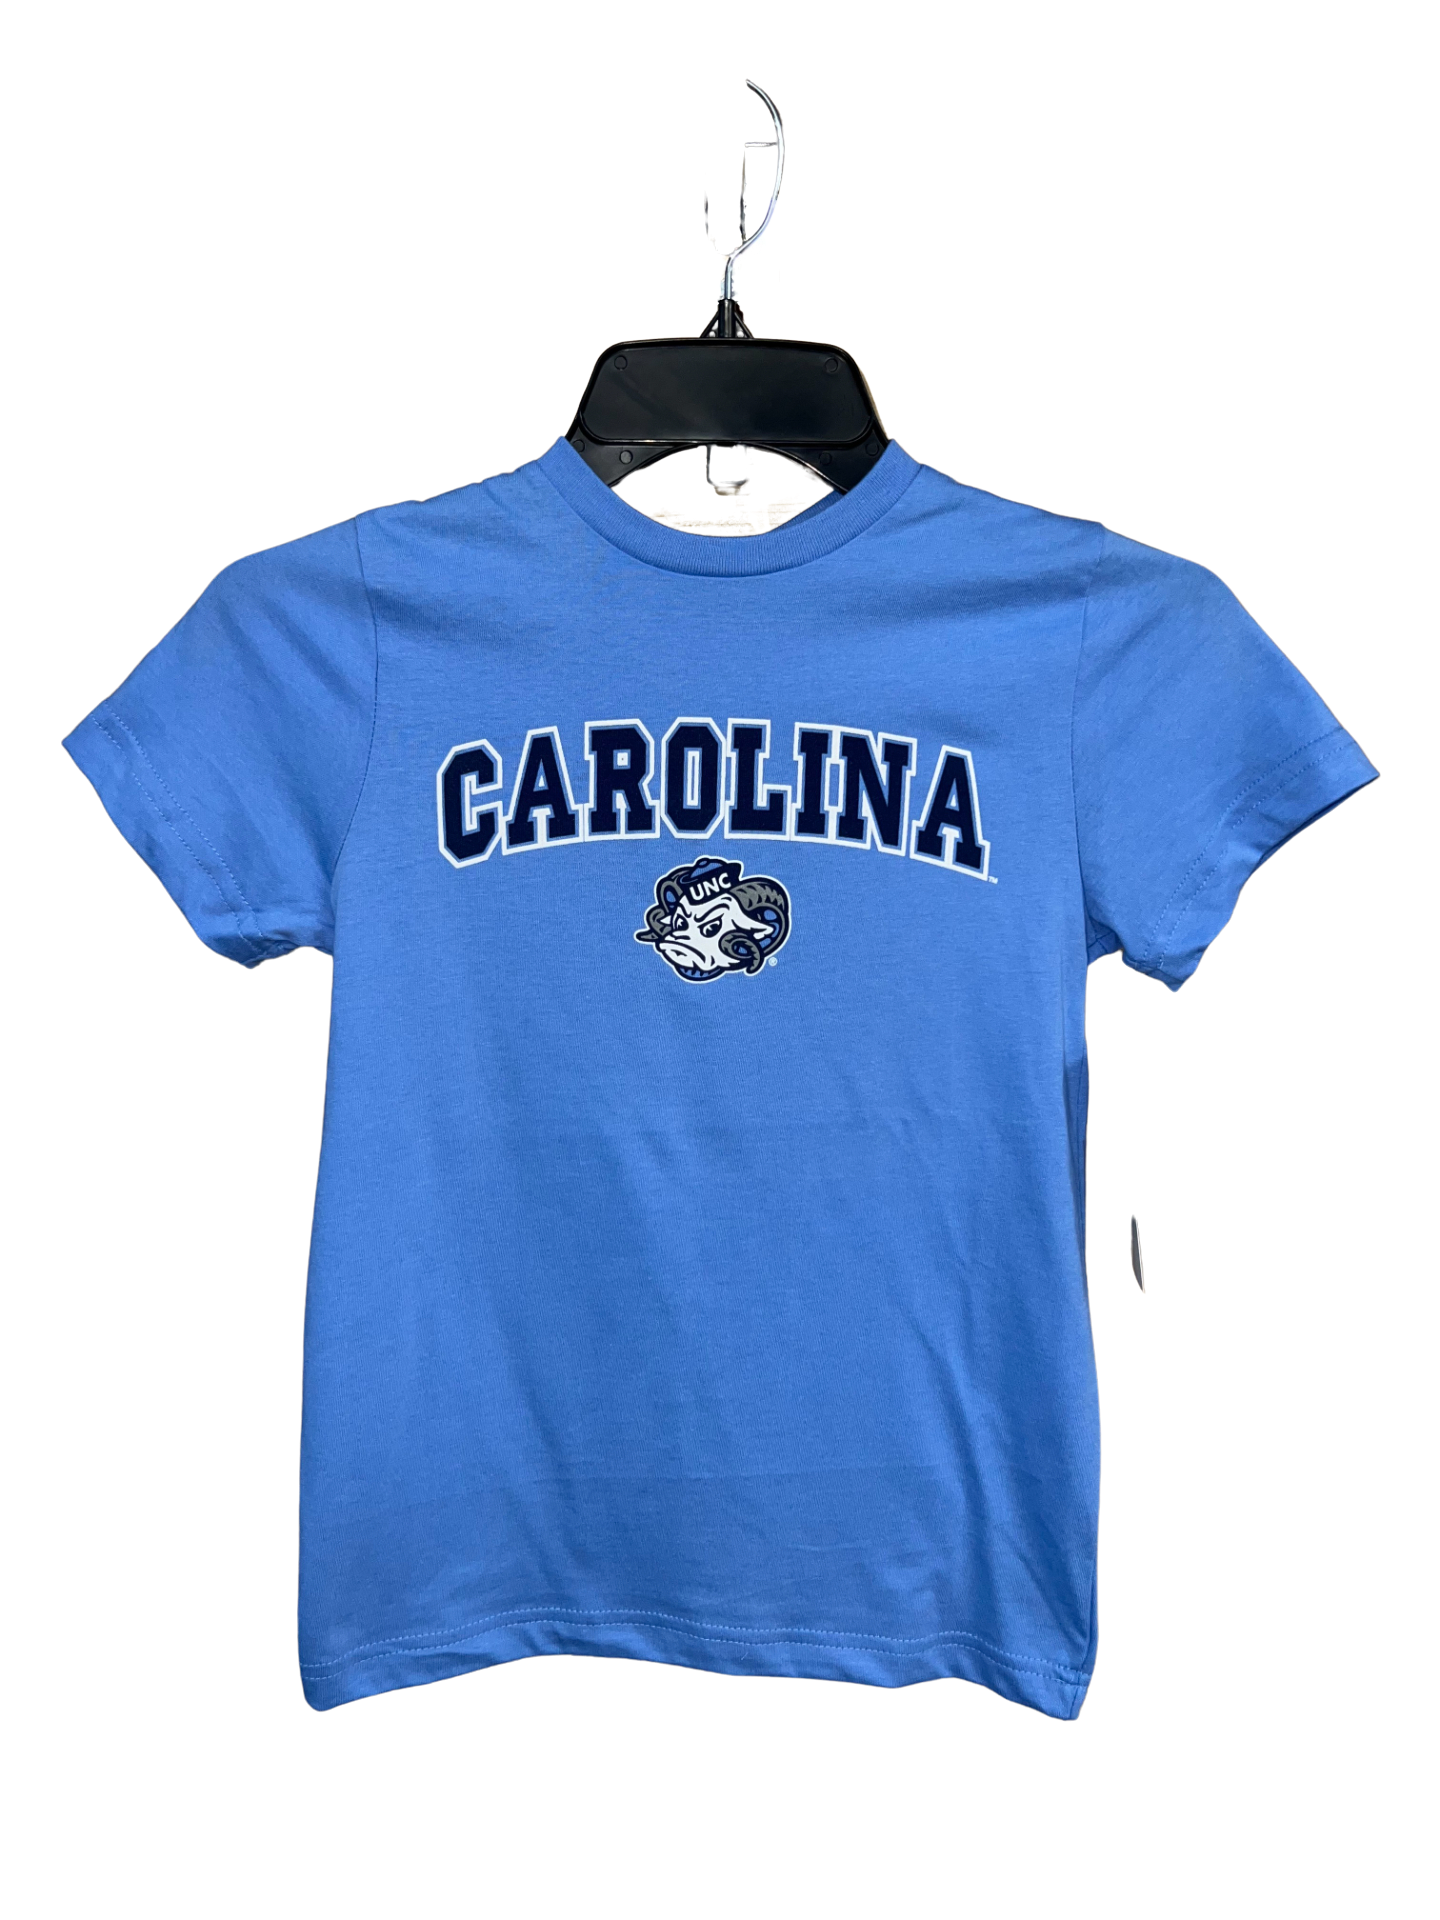 Carolina and Small Ramses T-shirt - Toddler